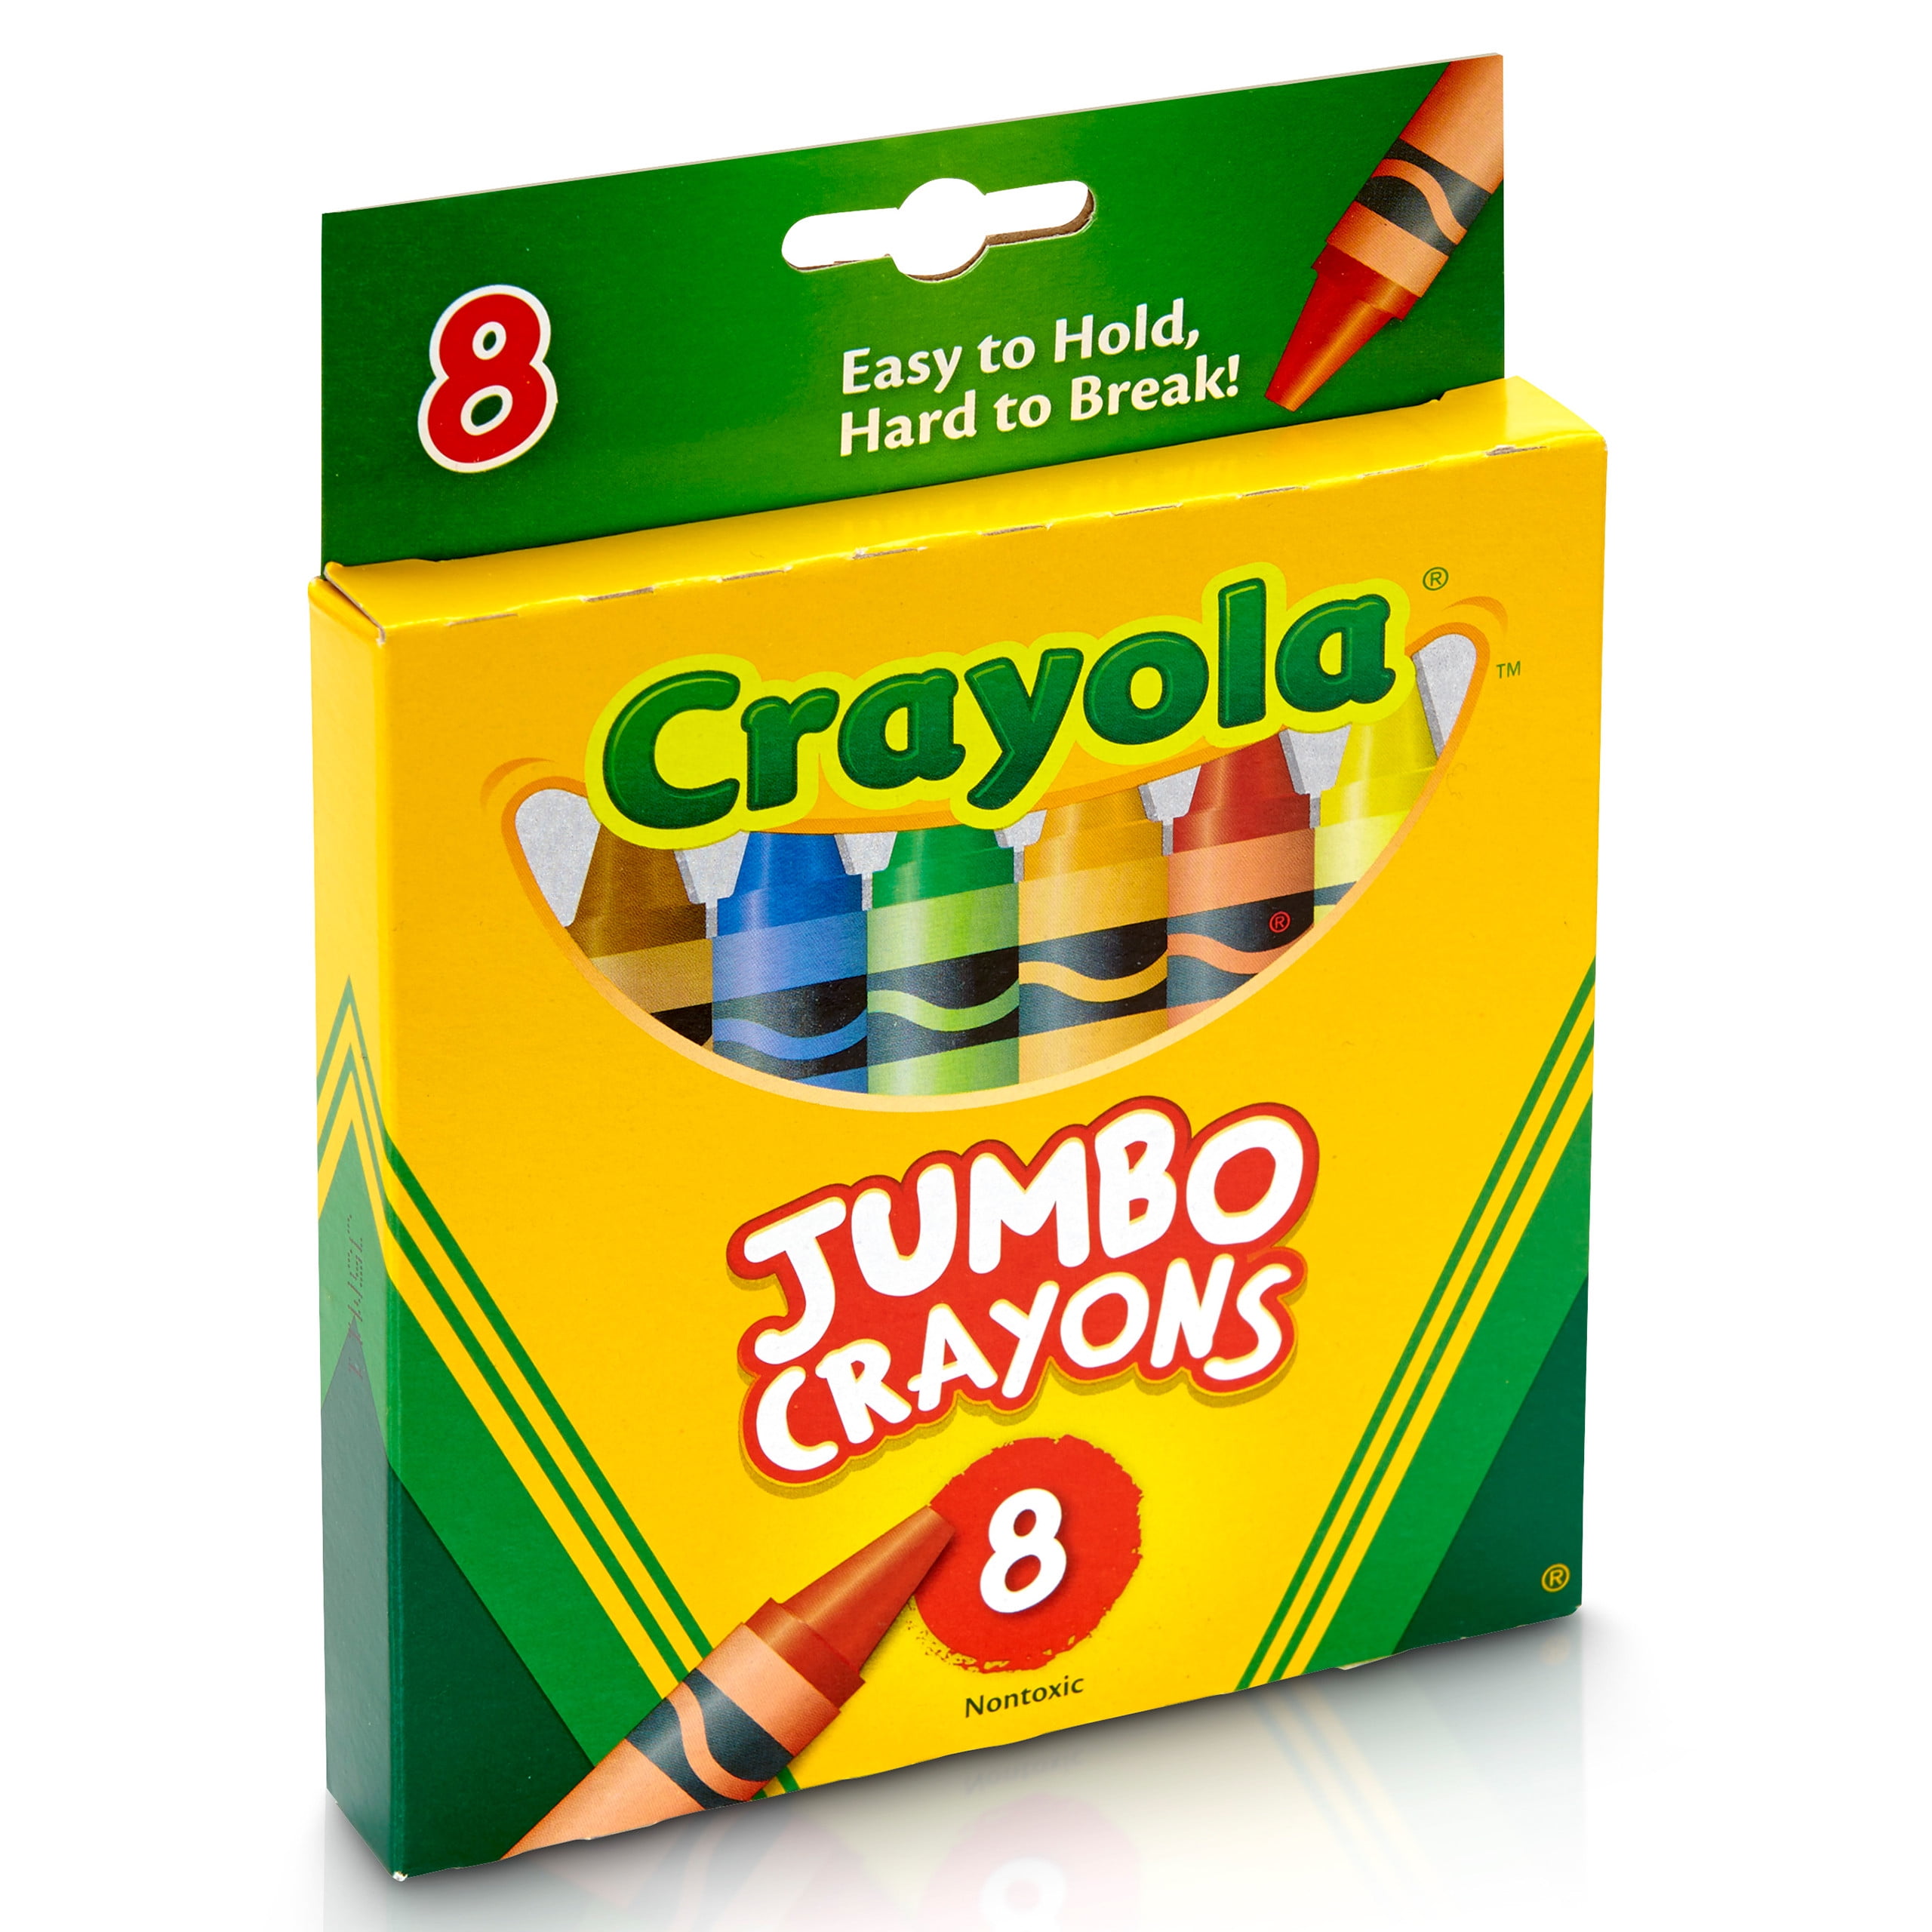  Swanaryo Washable Jumbo Crayons for Toddlers